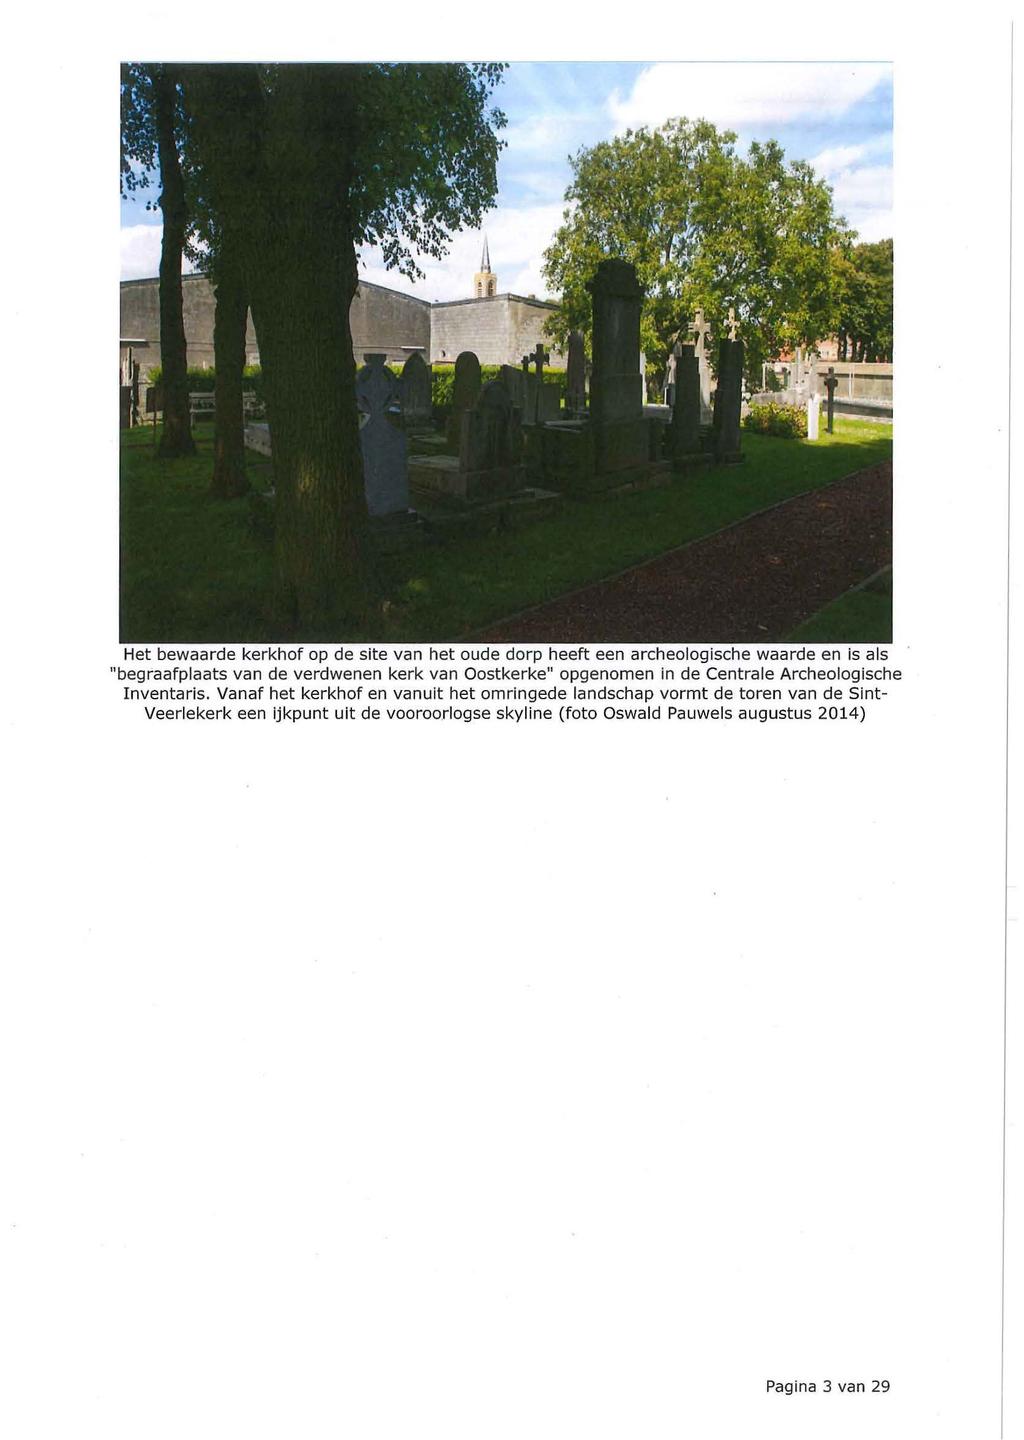 Het bewaarde kerkhof op de site van het oude dorp heeft een archeologische waarde en is als "begraafplaats van de verdwenen kerk van Oostkerke" opgenomen in de Centrale Archeologische